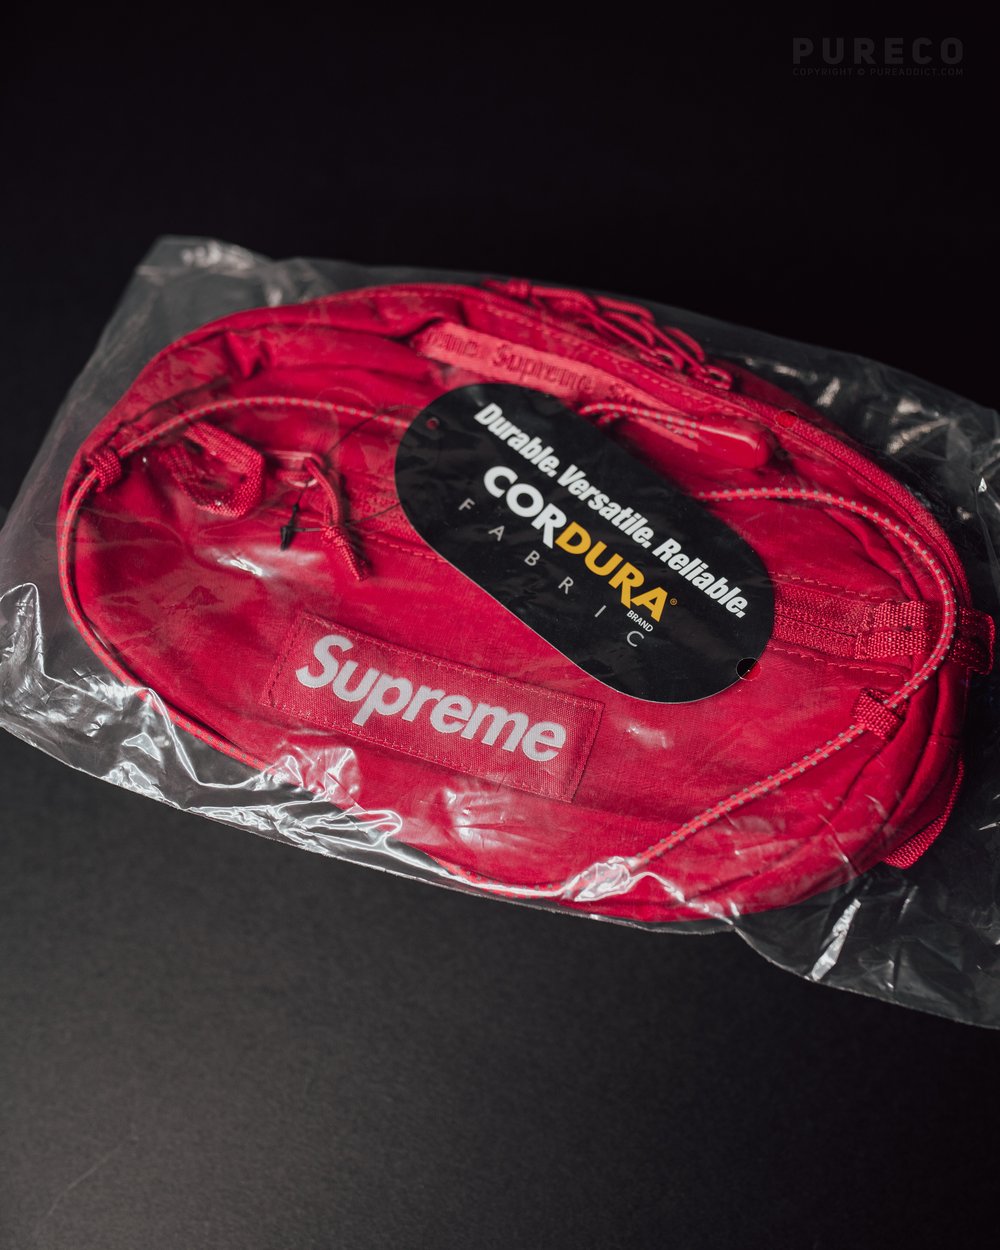 supreme sling bag red